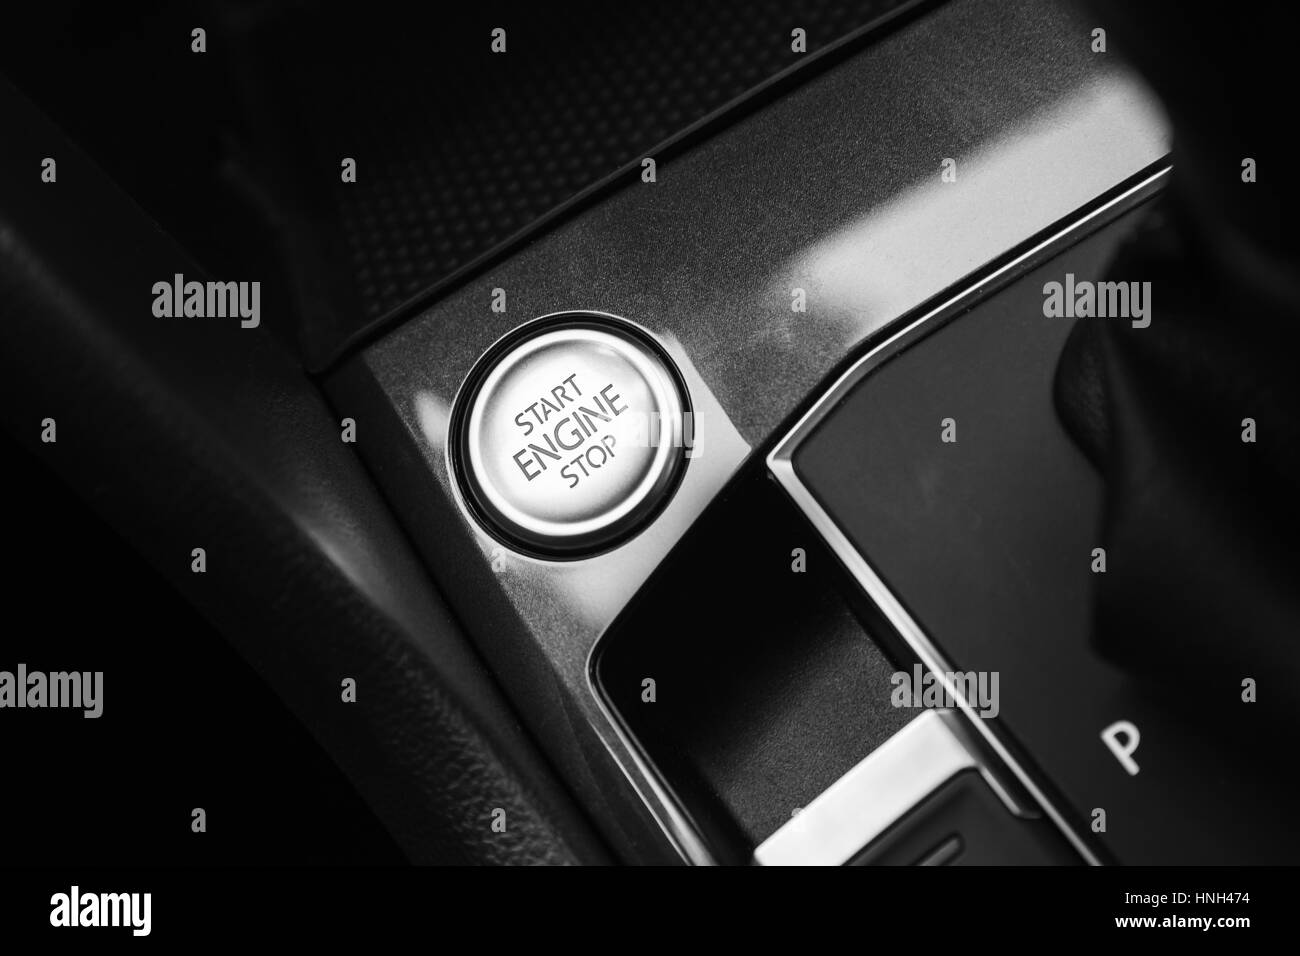 Modern luxury car interior detail, engine start stop button Stock Photo